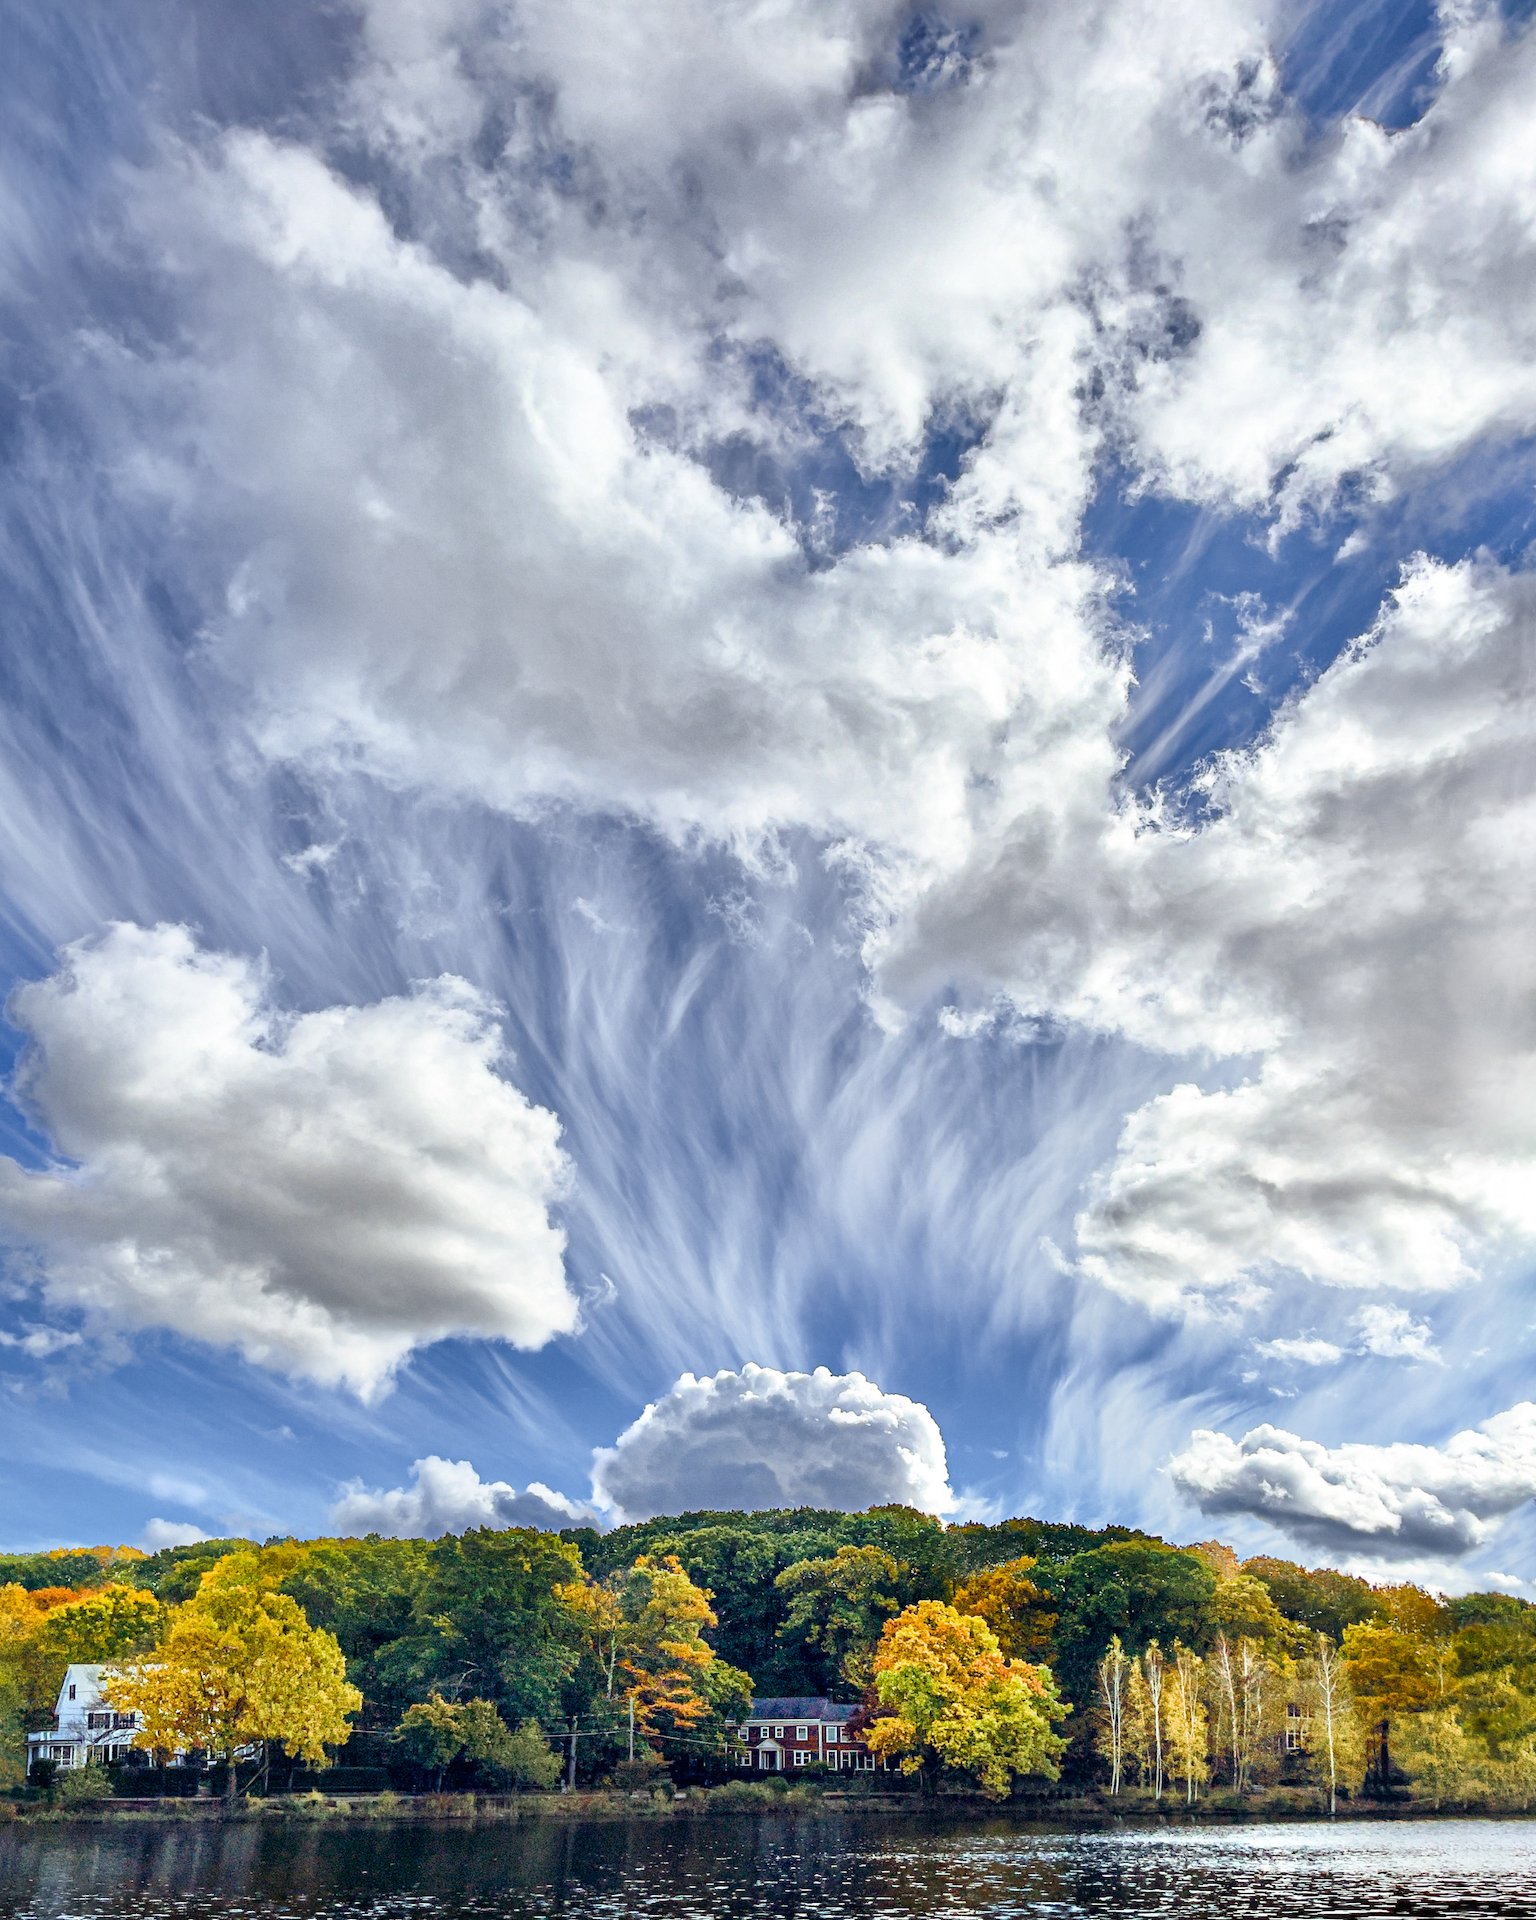   Bullough's Pond Cloudscape - Vesuvius   by Ellen Foust 